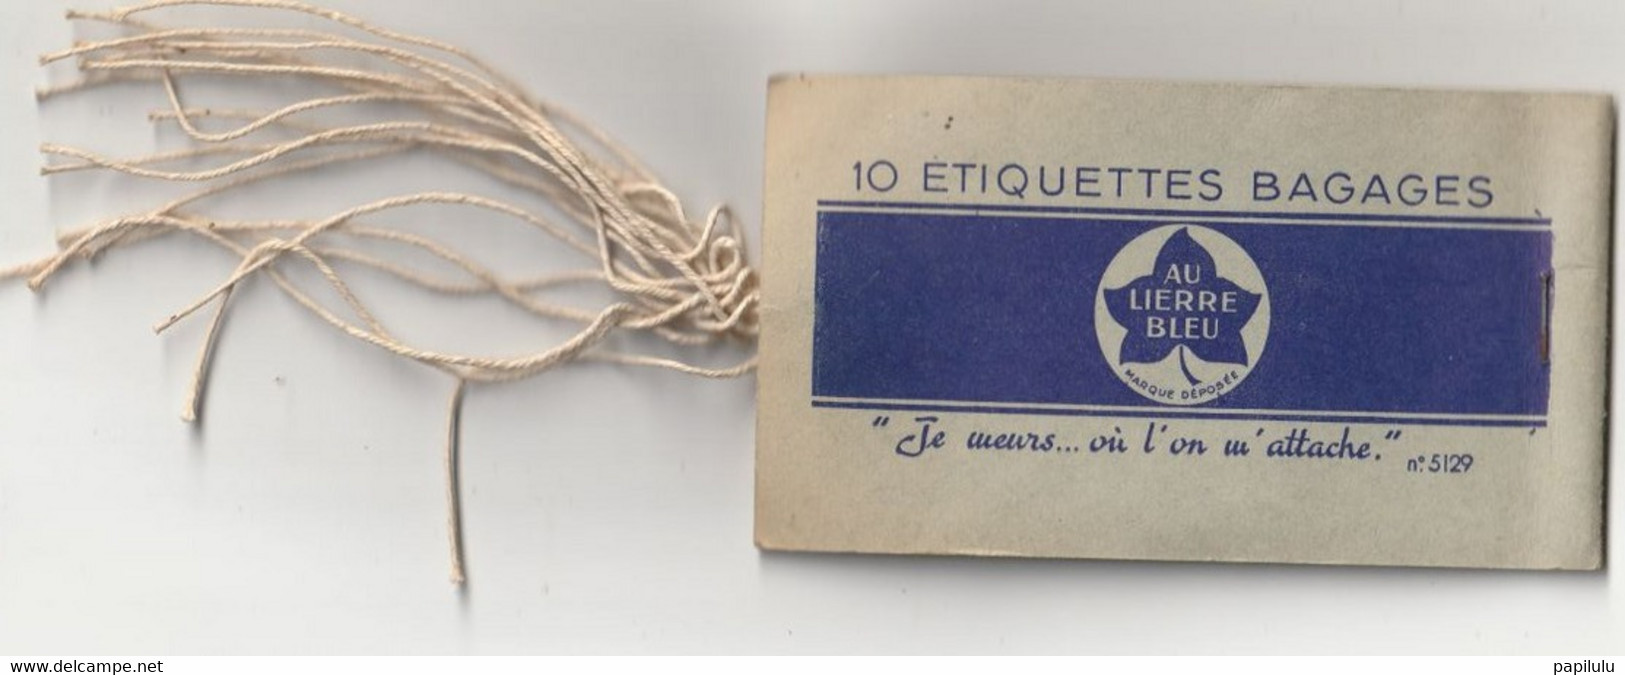 AUTRES COLLECTIONS 30 : Au Lierre Bleu 10 étiquettes Bagages ( Manque Une étiquette ) - Baggage Etiketten